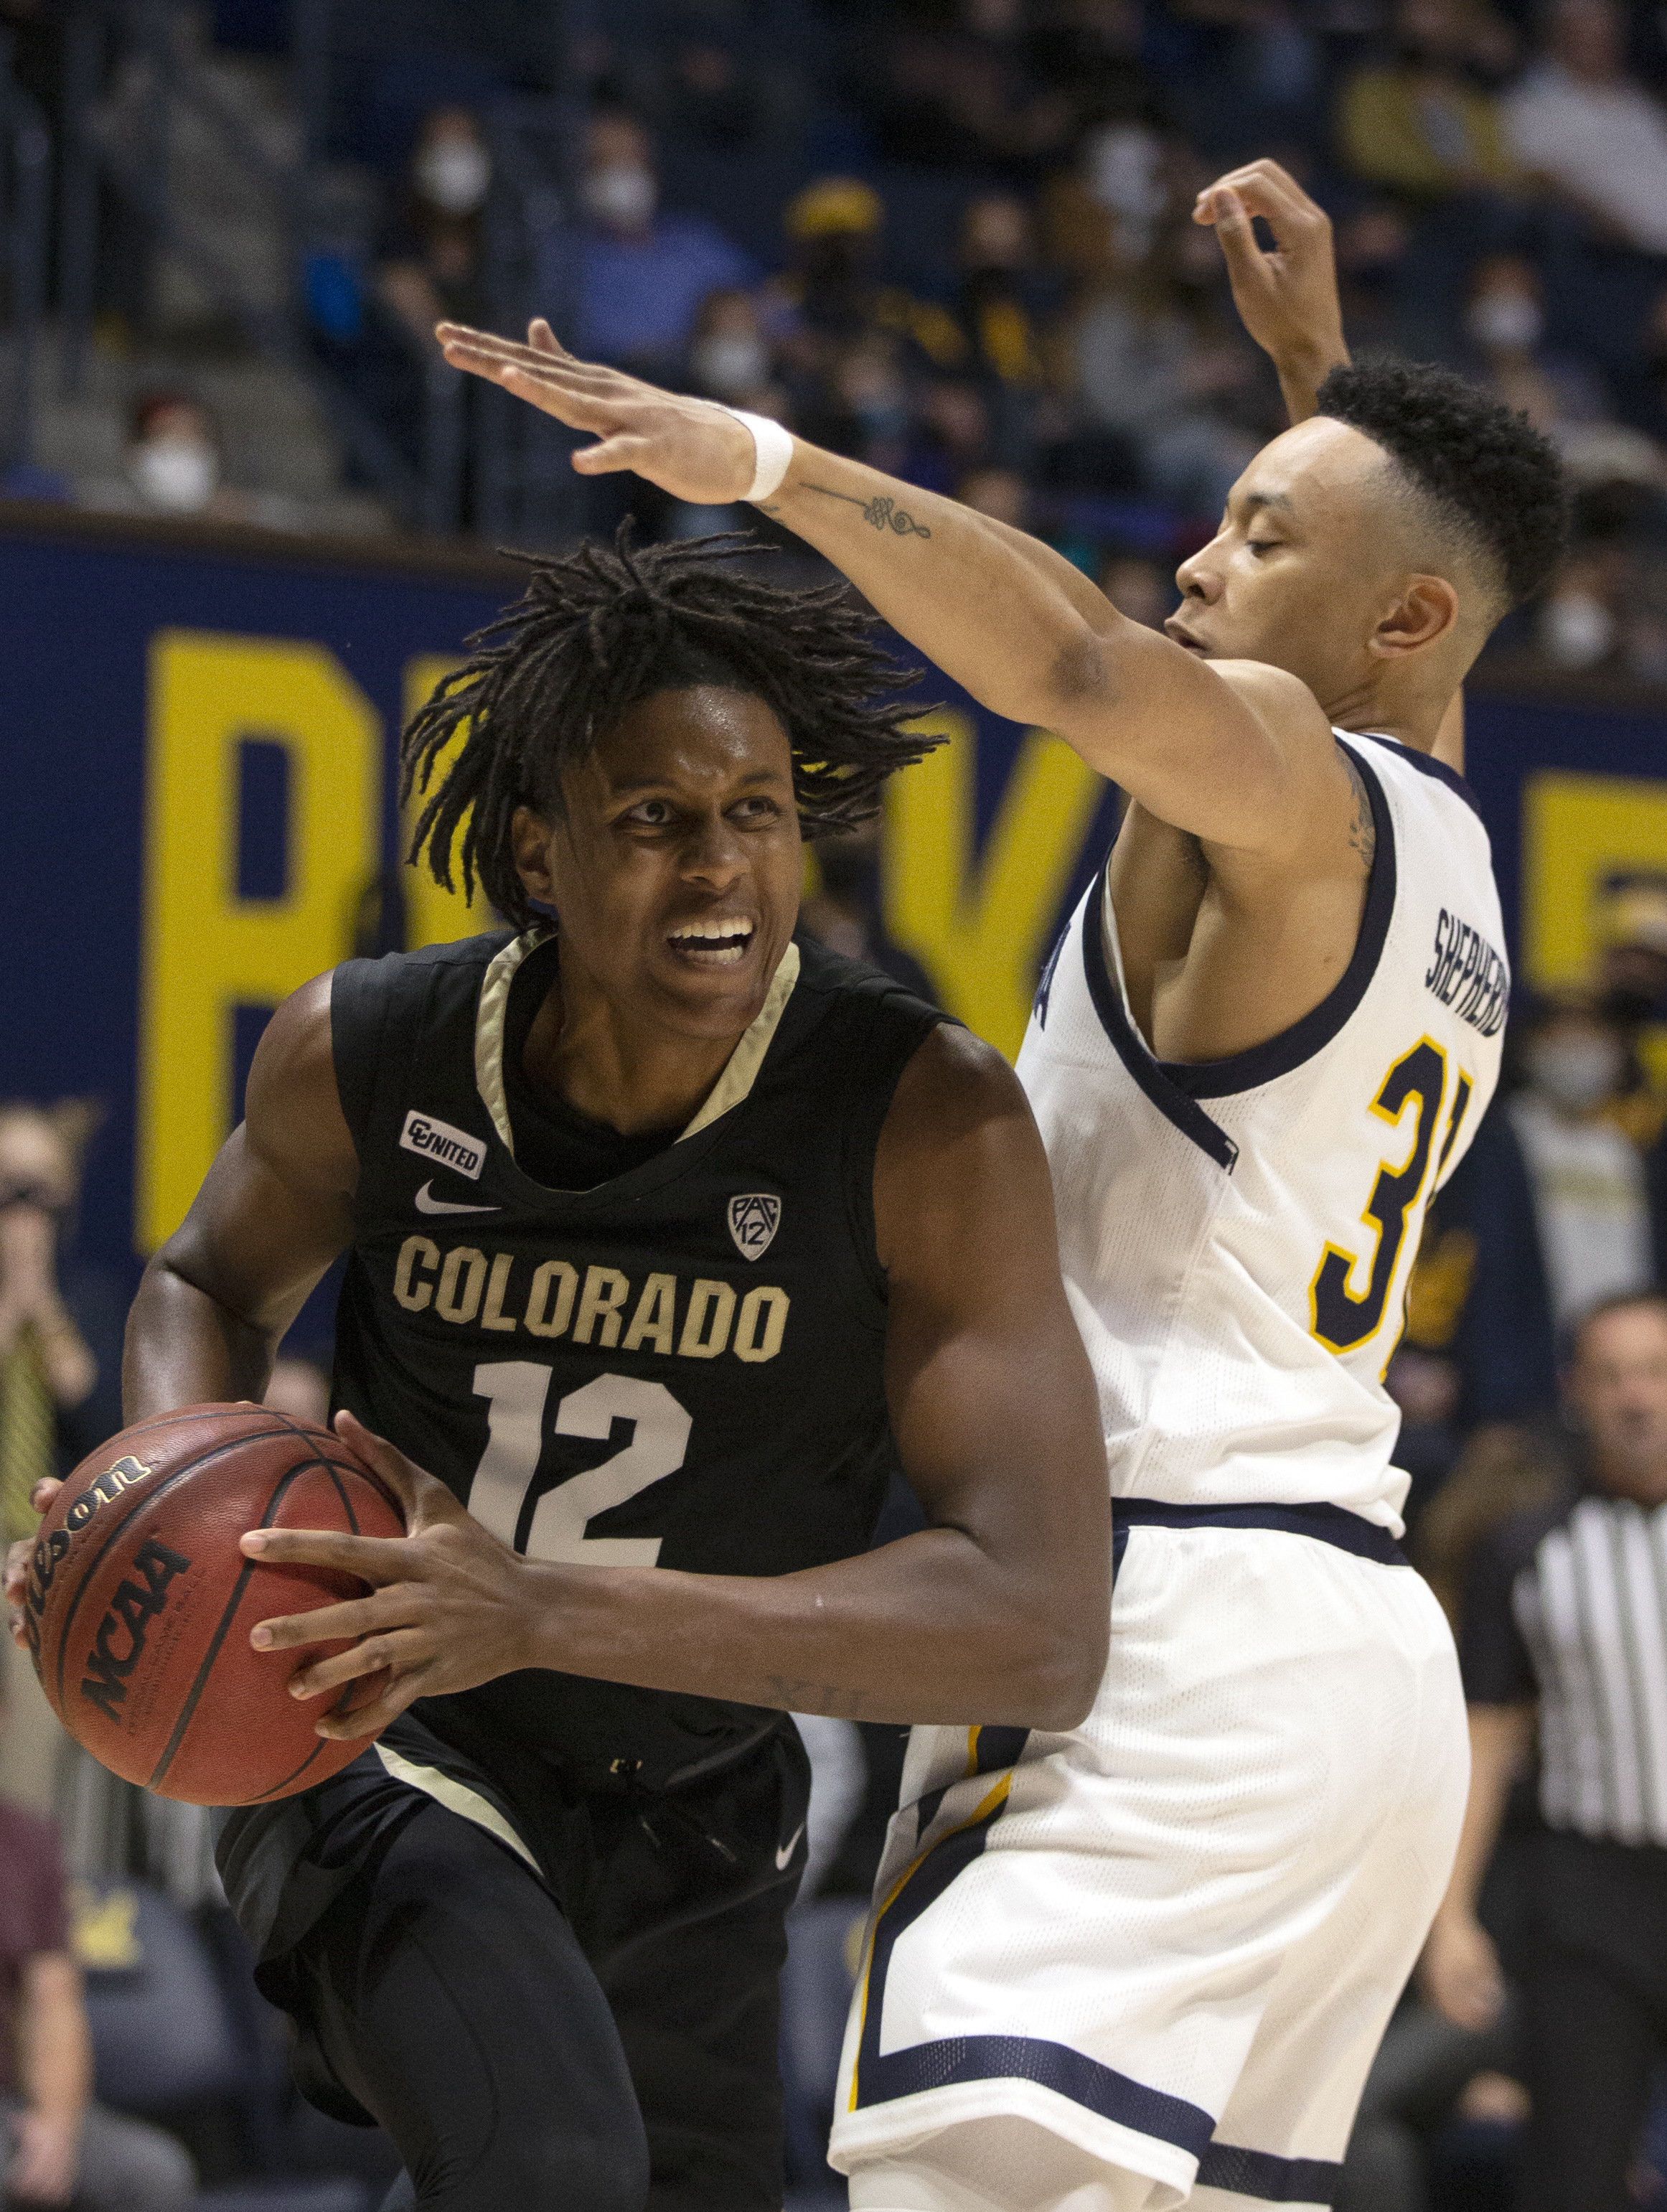 NCAA Basketball: Colorado at California